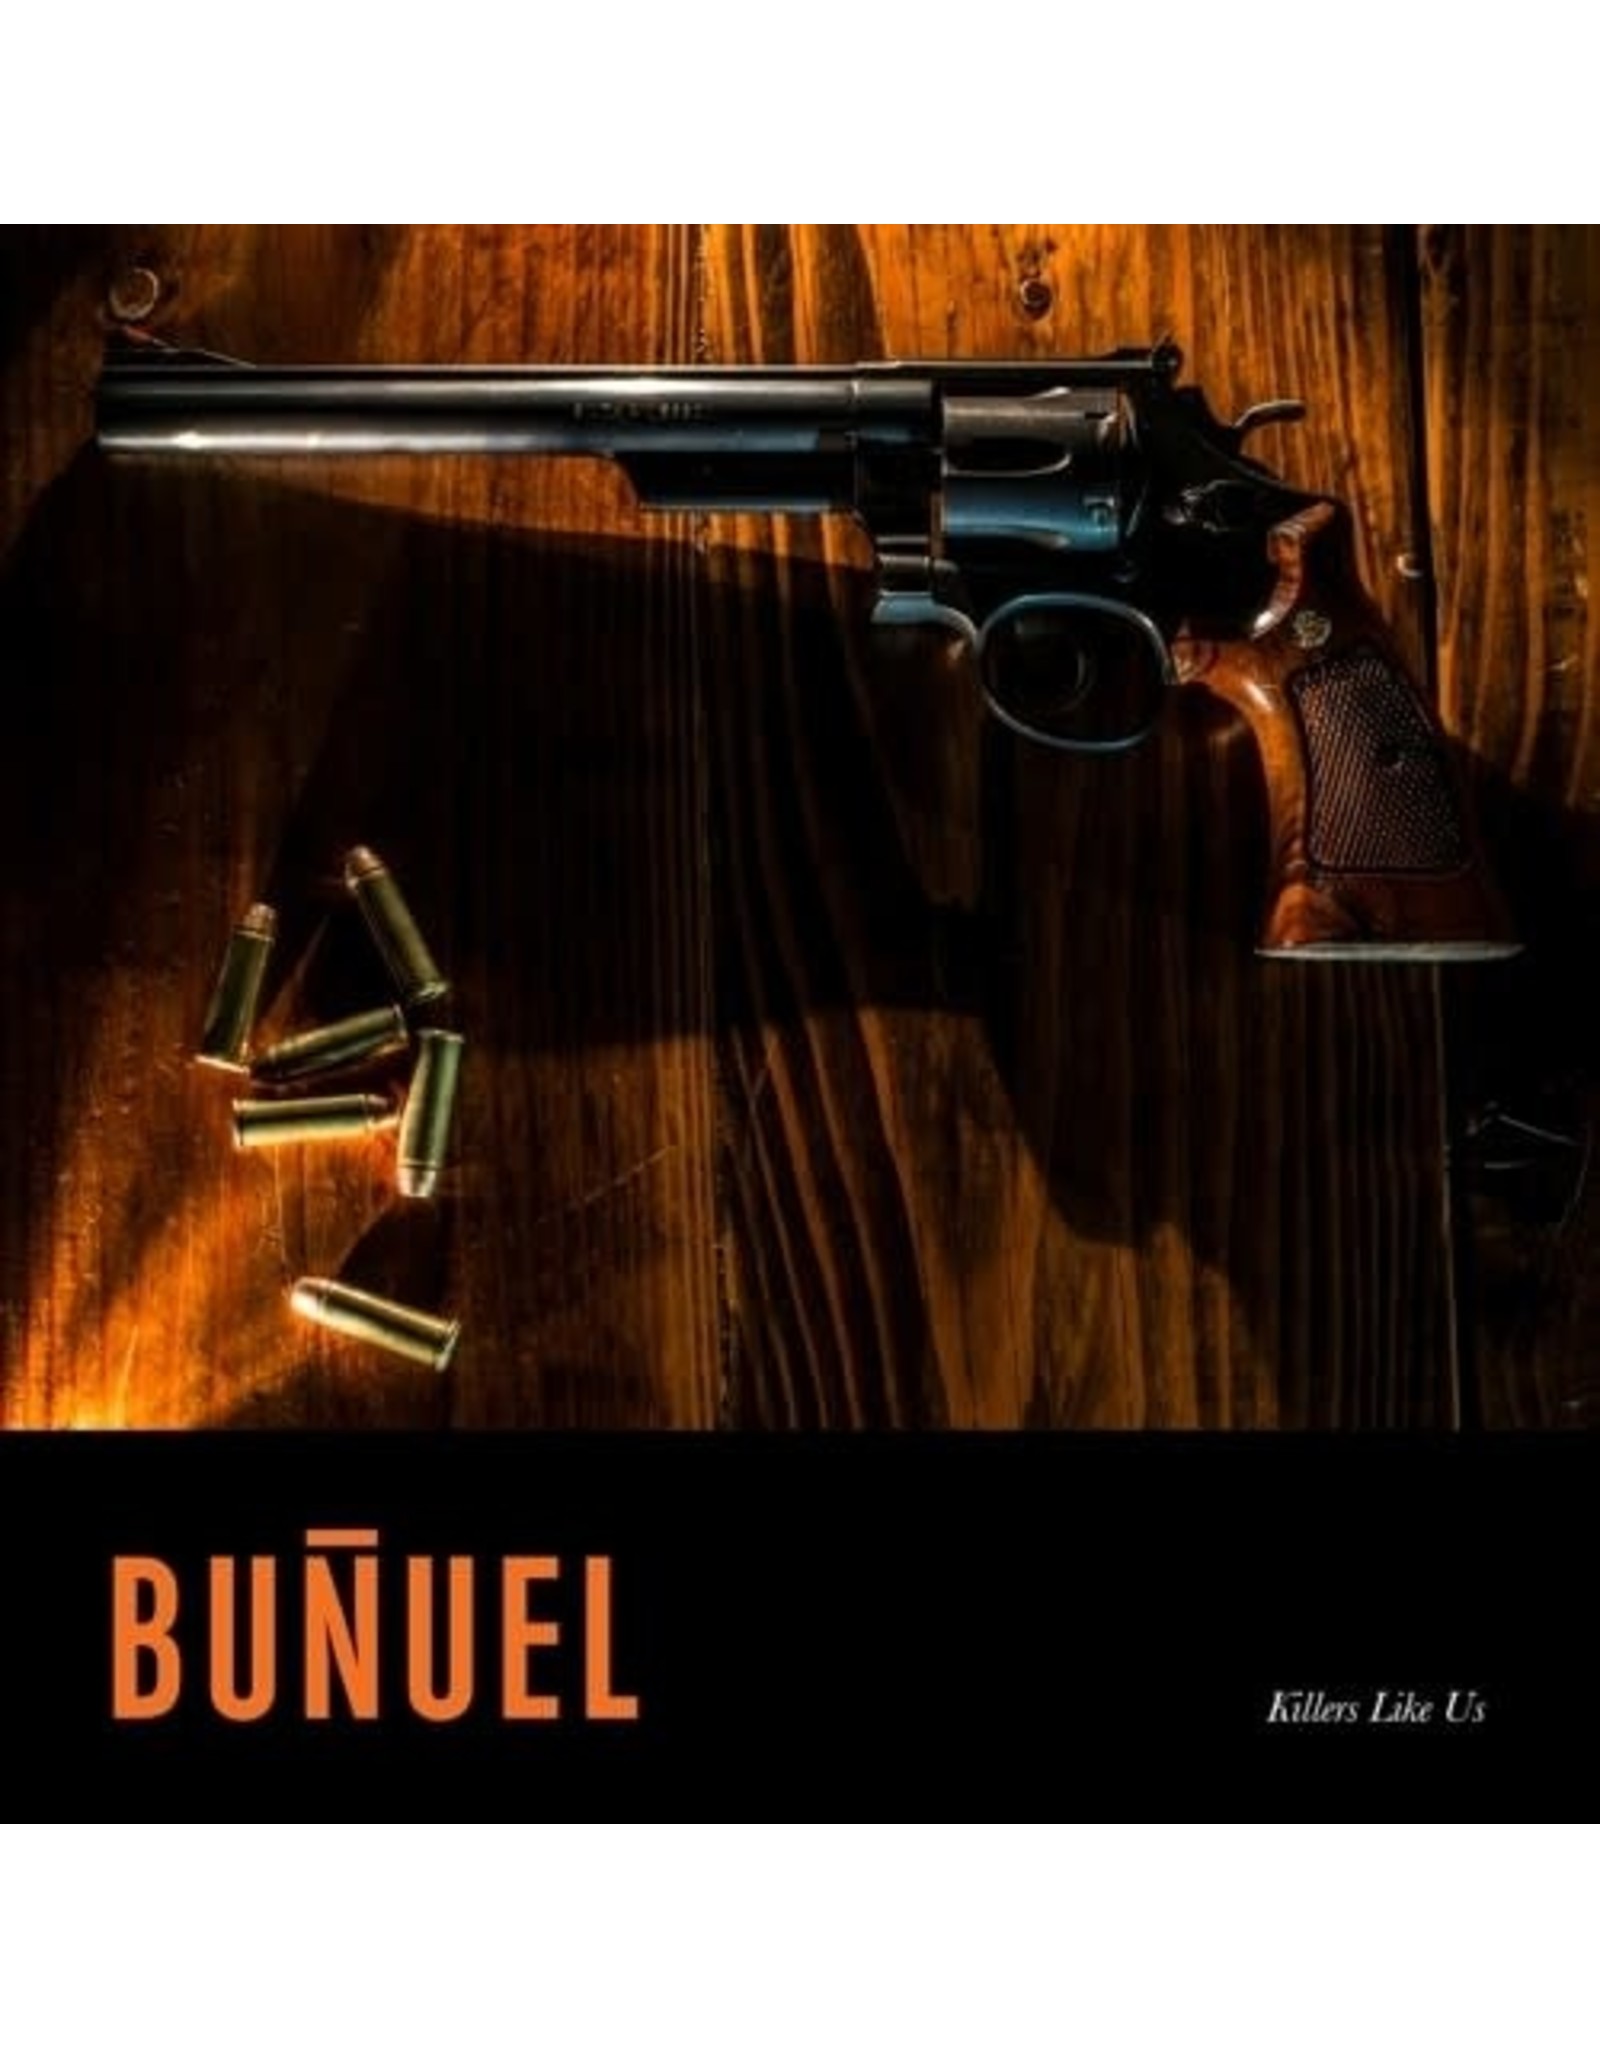 New Vinyl Bunuel - Killers Like Us LP